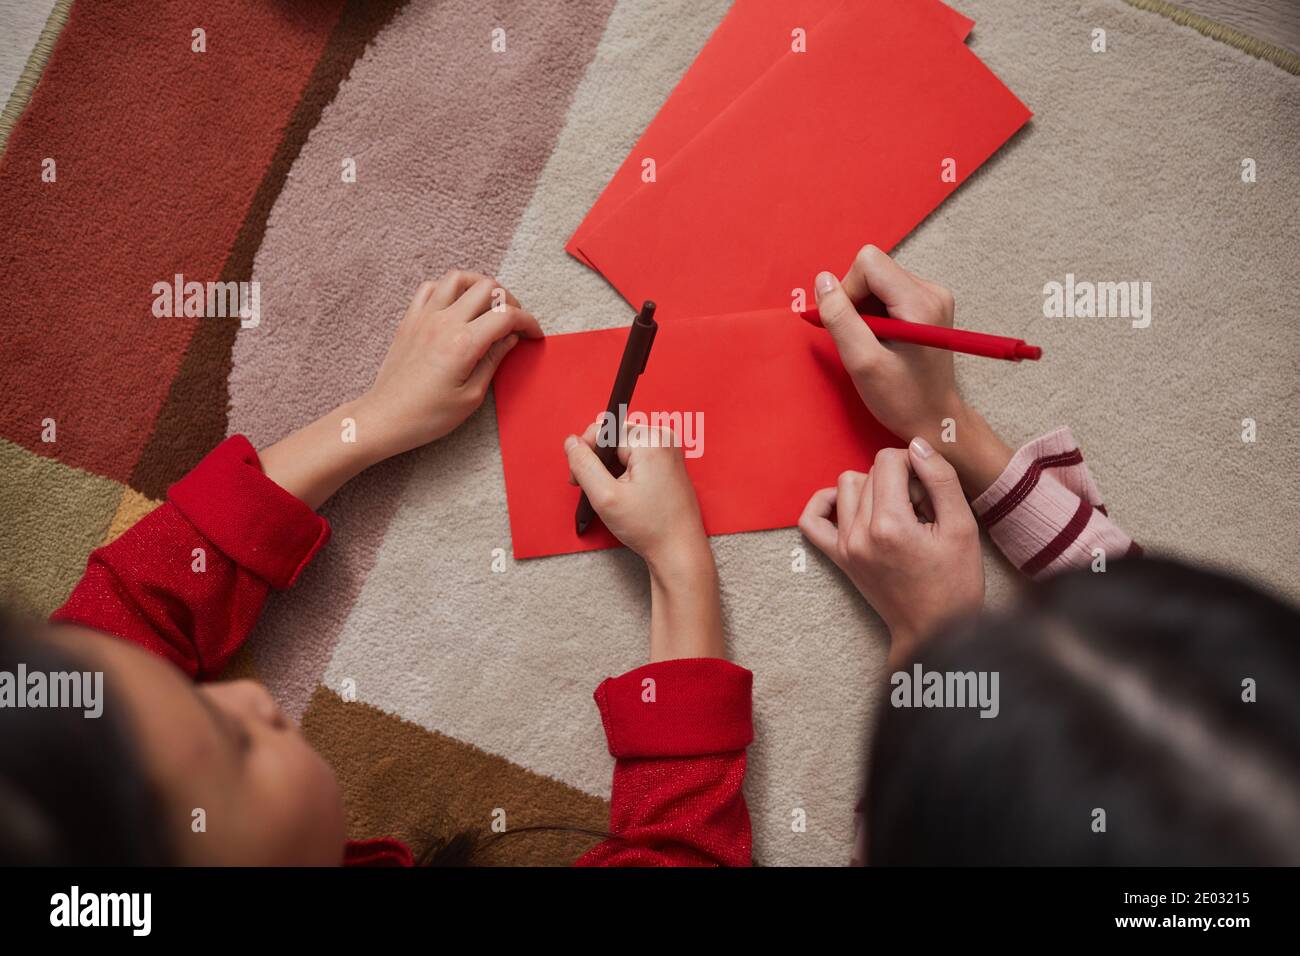 Directement depuis la photo ci-dessus des enfants chinois couchés sur le sol commencer à décorer des enveloppes faites à la main en dessinant quelque chose sur elles Banque D'Images